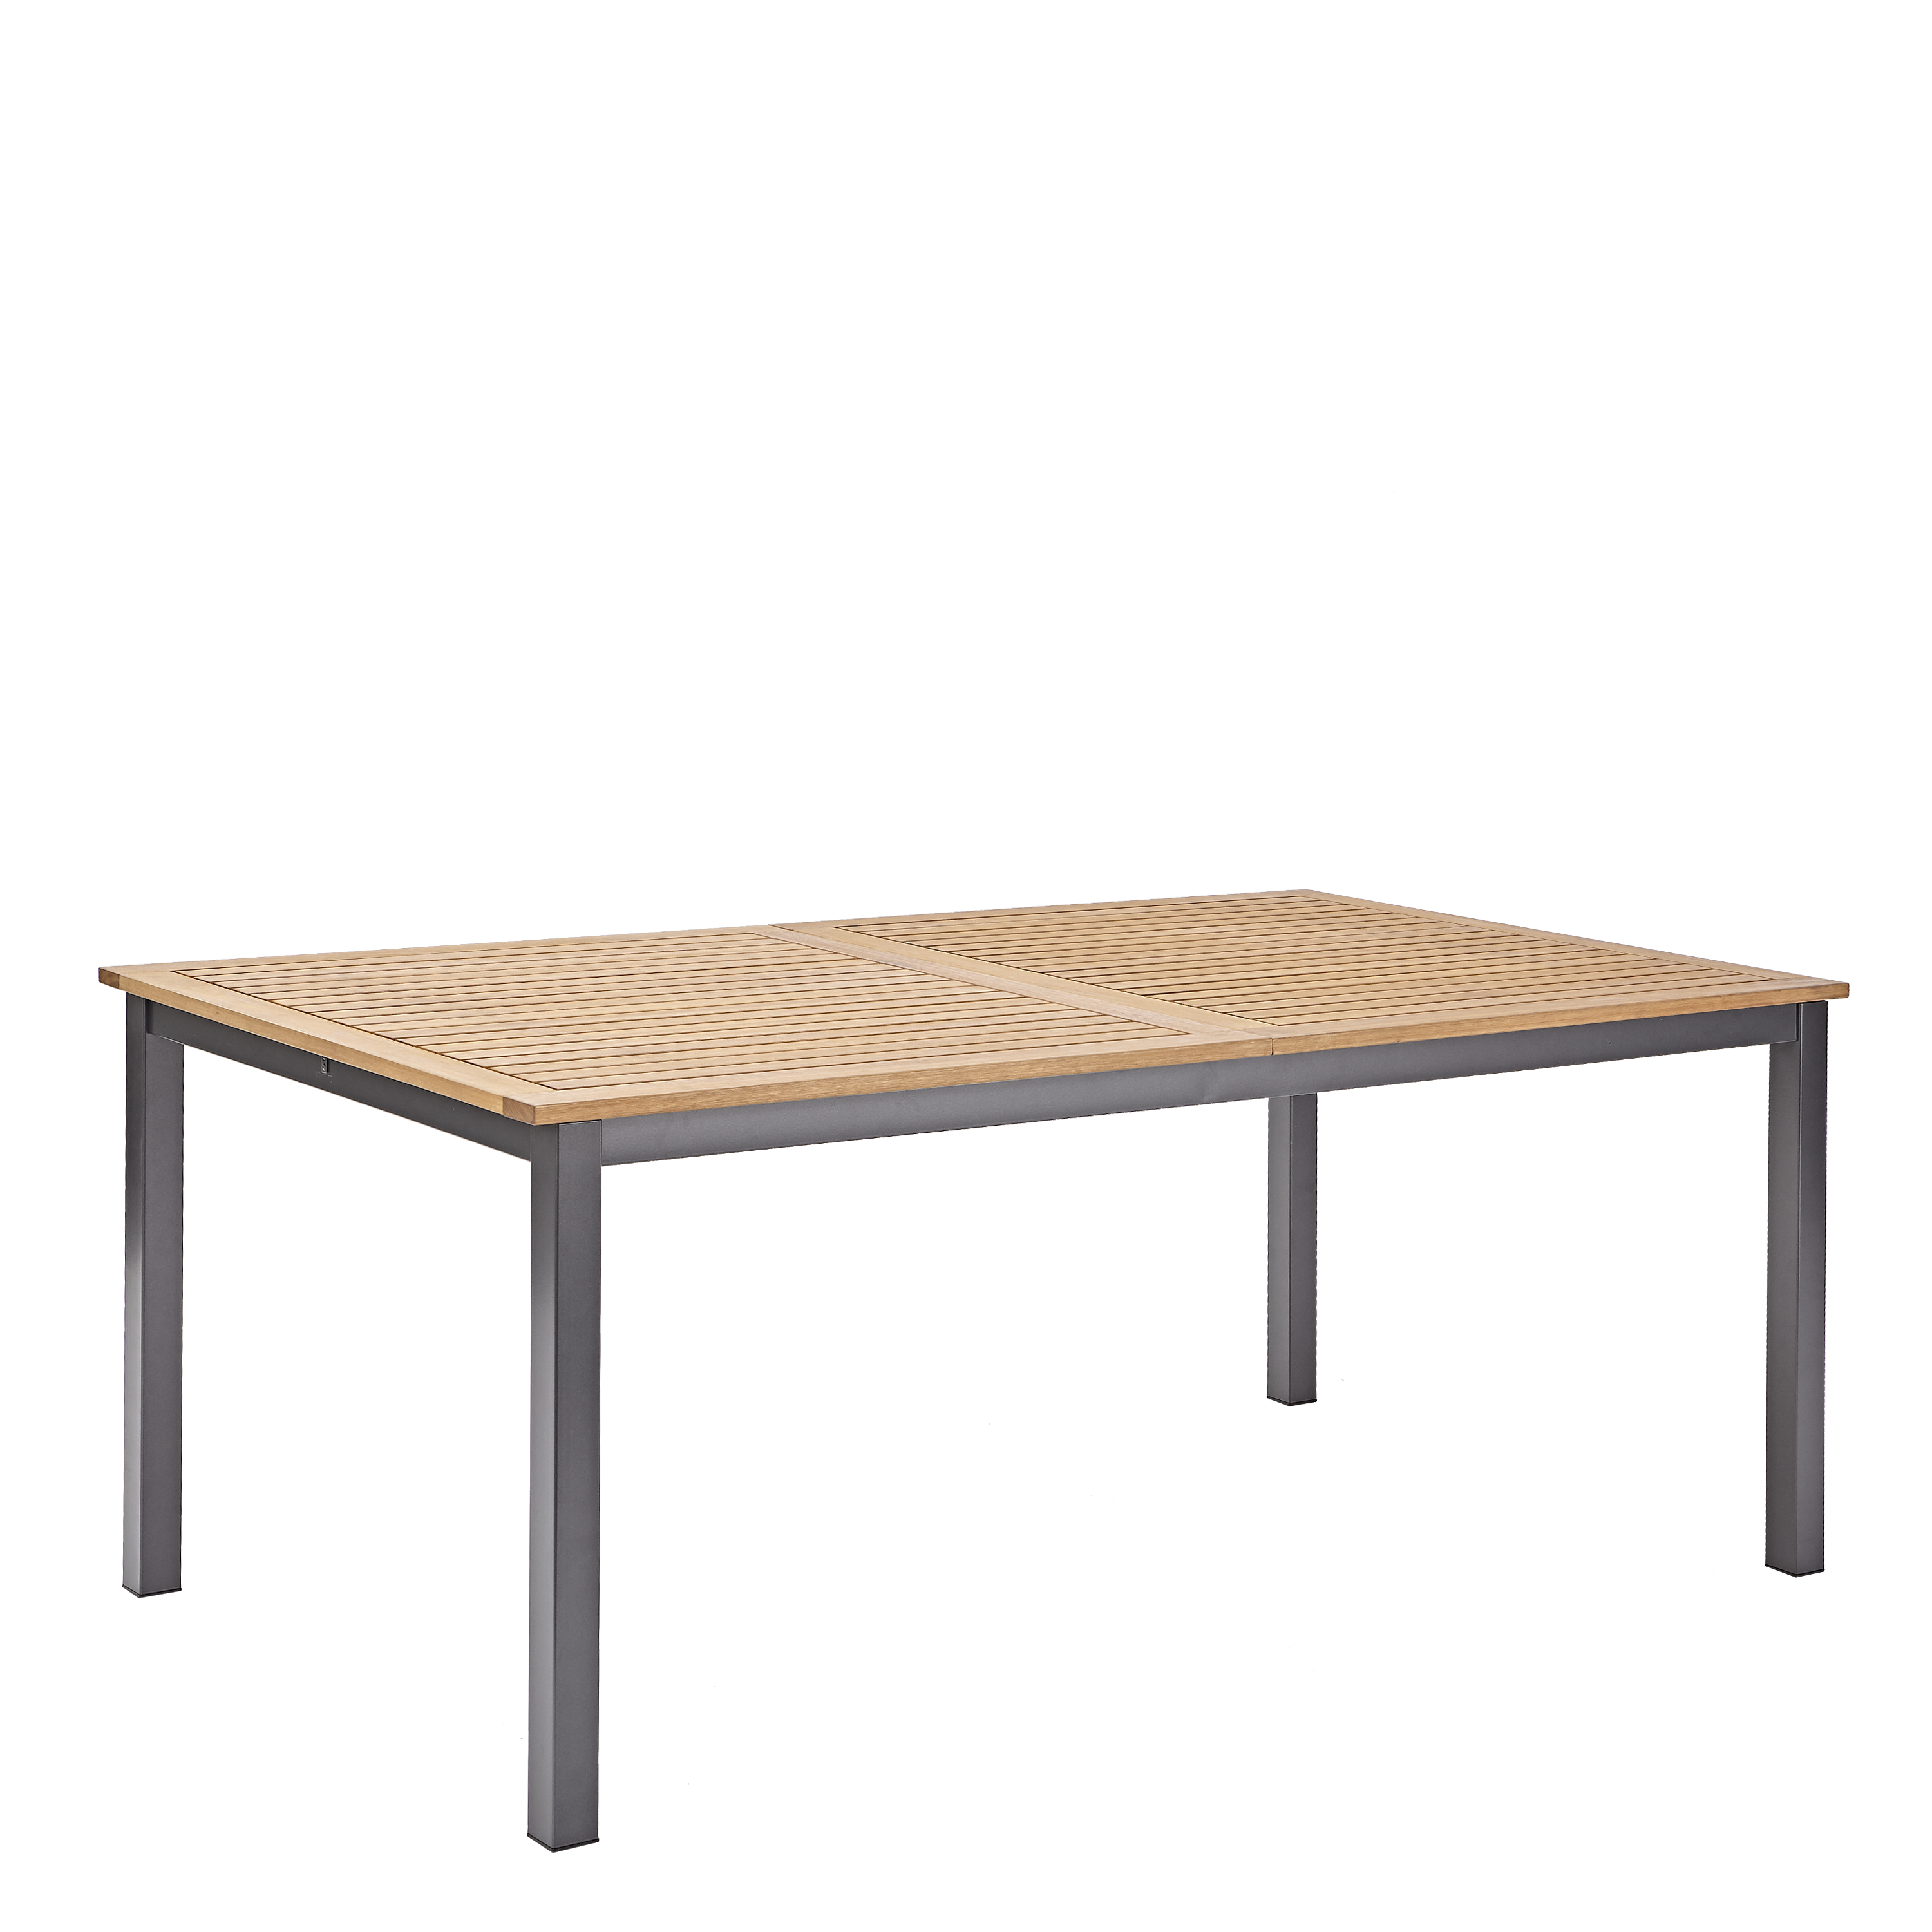 Tavolo DA GIARDINO EUCALIPTO 50x50 cm-in legno tavolo pieghevole tavolo tavolo bistrot birra tavolo da giardino 